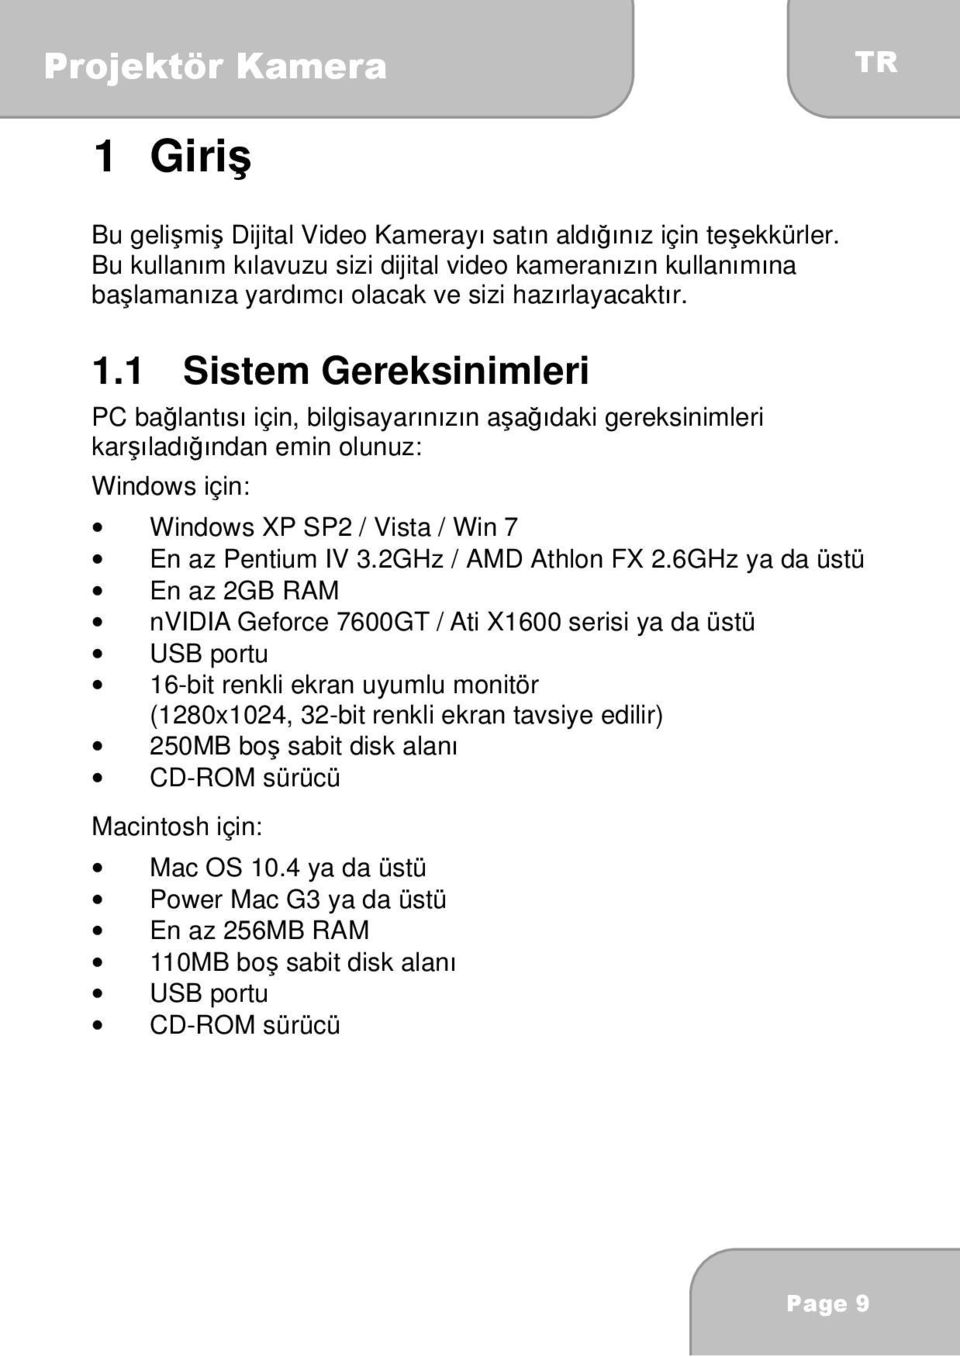 1 Sistem Gereksinimleri PC bağlantısı için, bilgisayarınızın aşağıdaki gereksinimleri karşıladığından emin olunuz: Windows için: Windows XP SP2 / Vista / Win 7 En az Pentium IV 3.